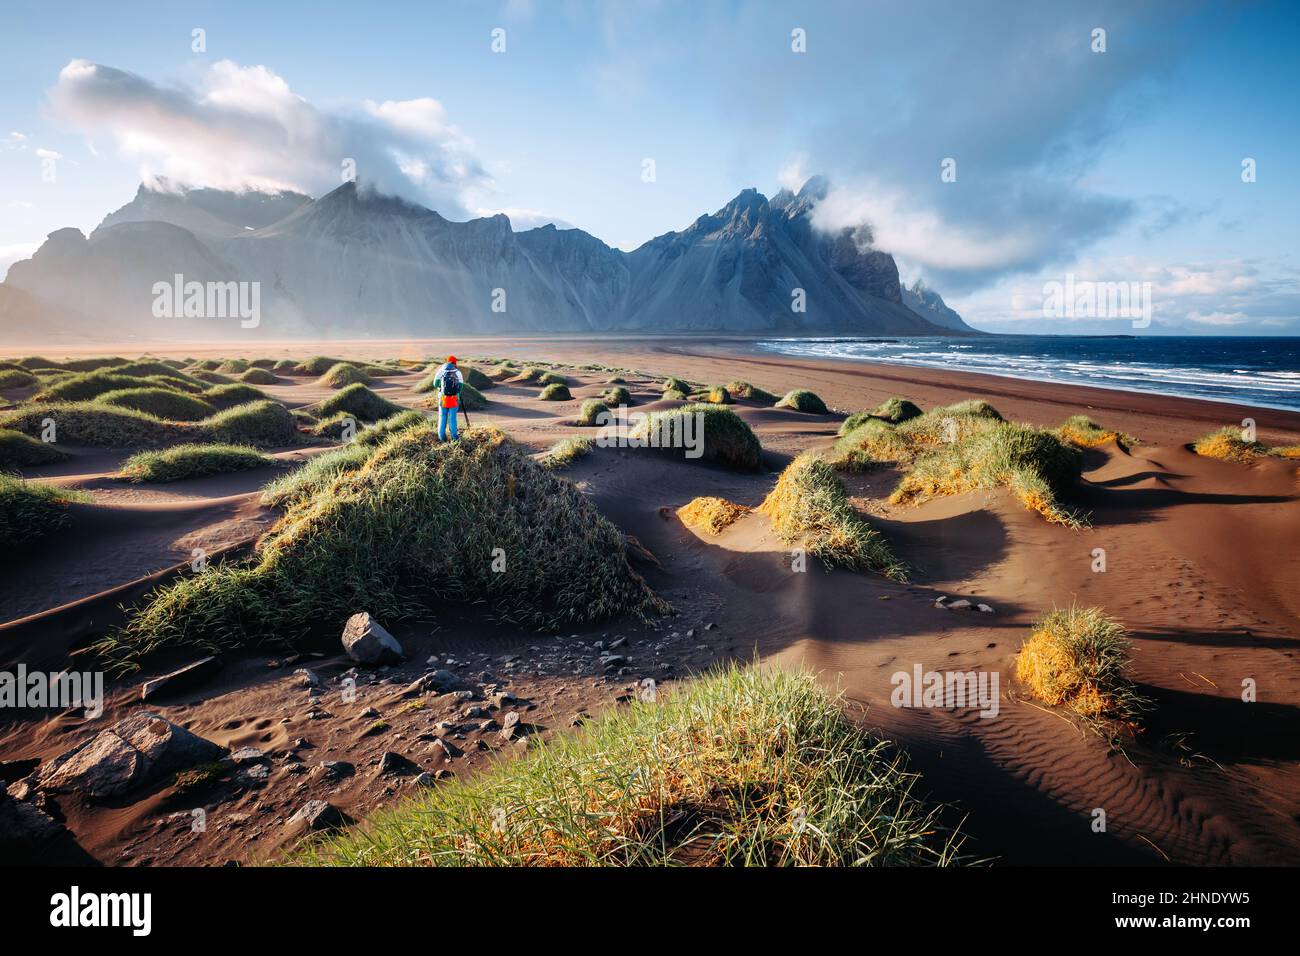 Vista unica sulle verdi colline con dune di sabbia. Location Stokksnes cape, Vestrahorn (Batman Mount), Islanda, Europa. Immagine panoramica dell'attrazione turistica. T Foto Stock